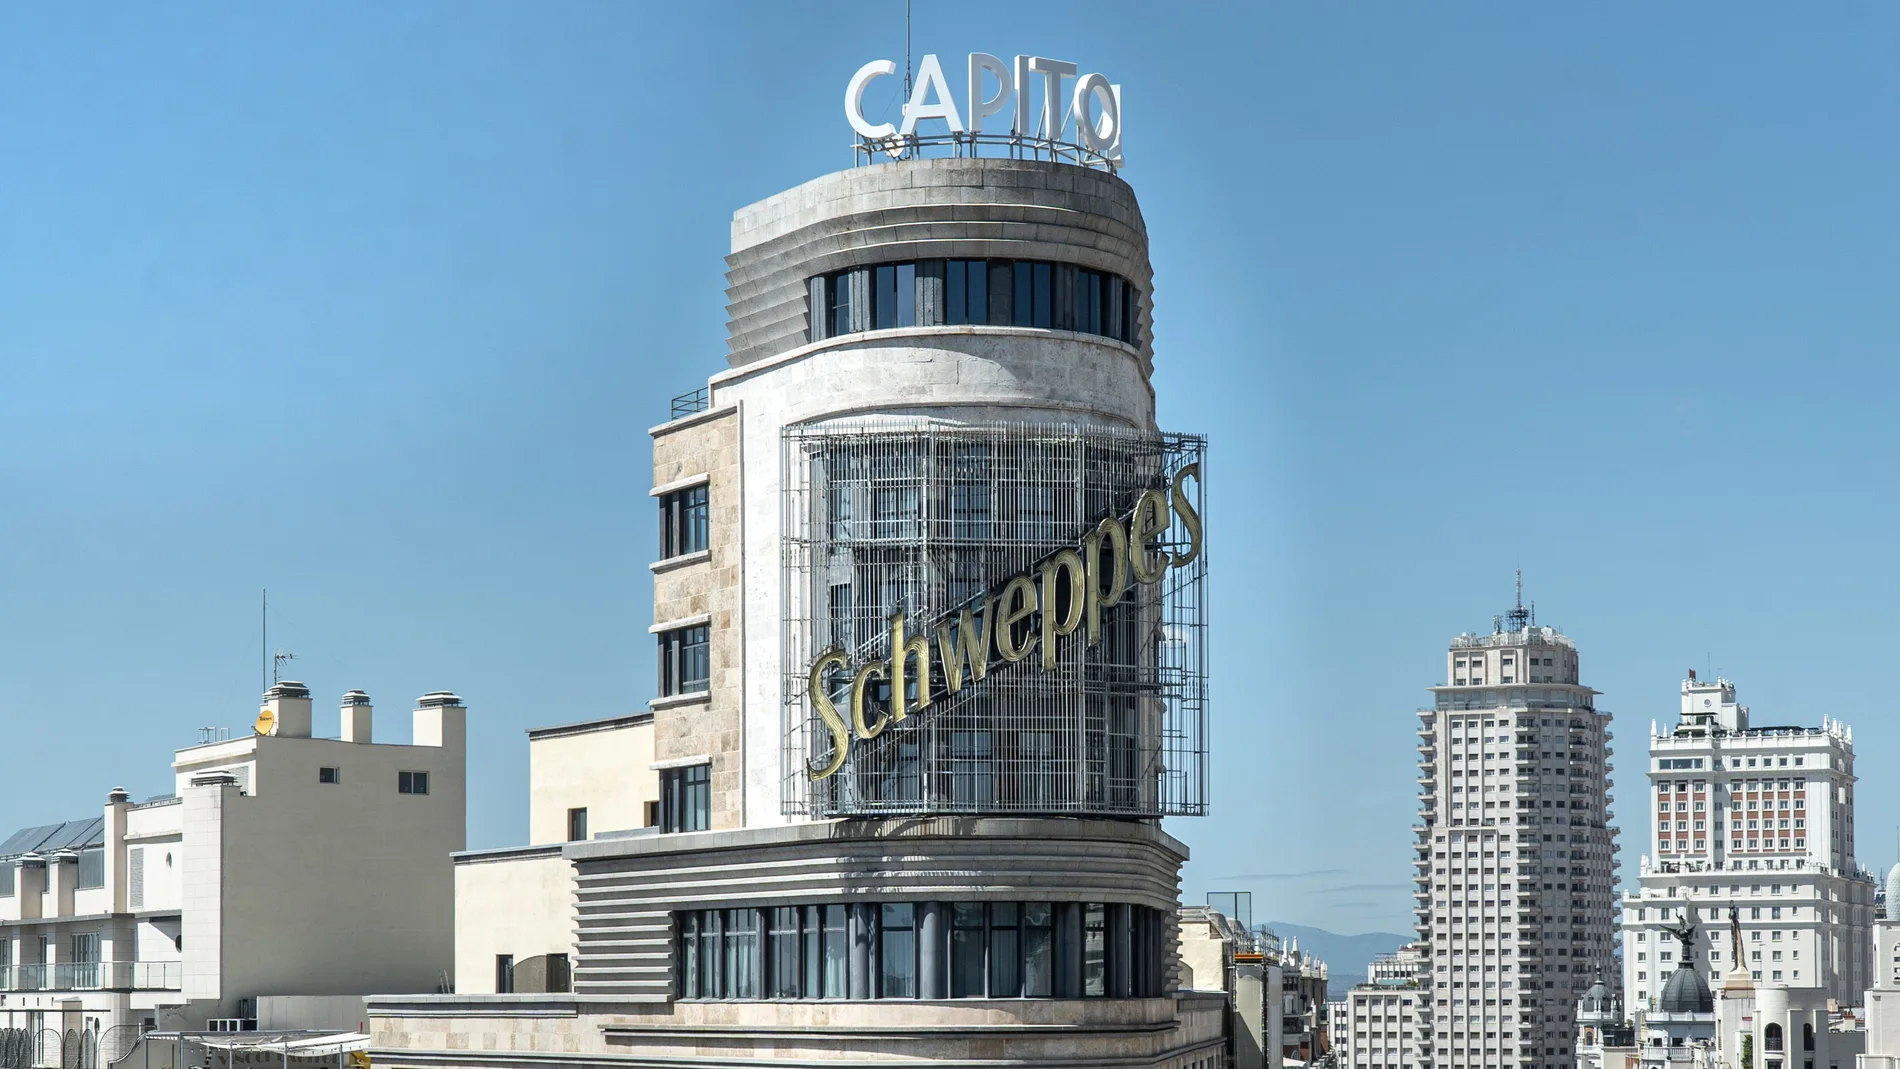 Encendido del nuevo letrero del hotel Capitol en la Gran Vía de Madrid